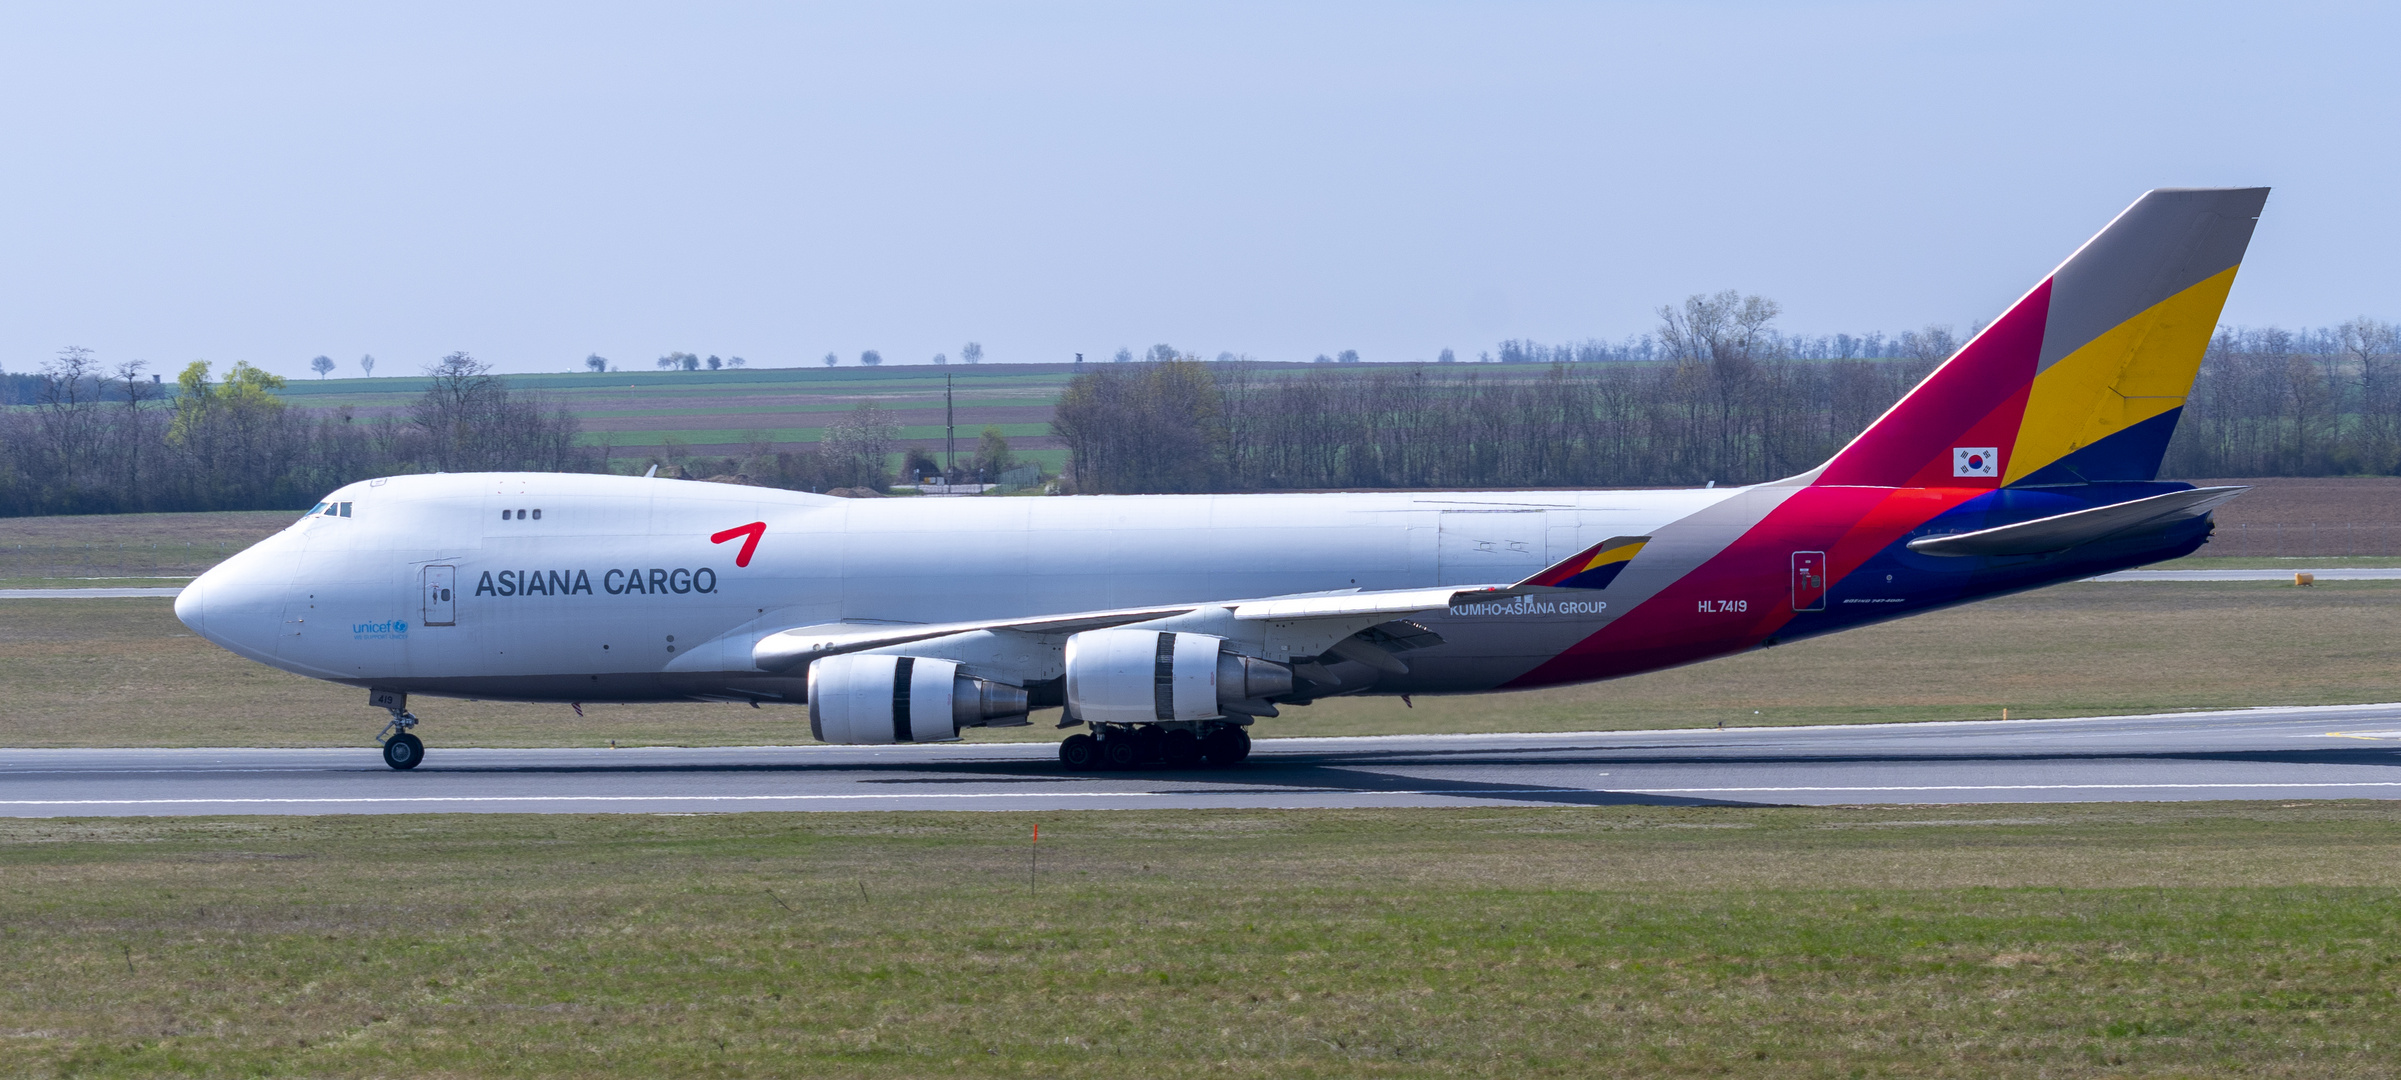 HL 7419 Boeing 747-400F